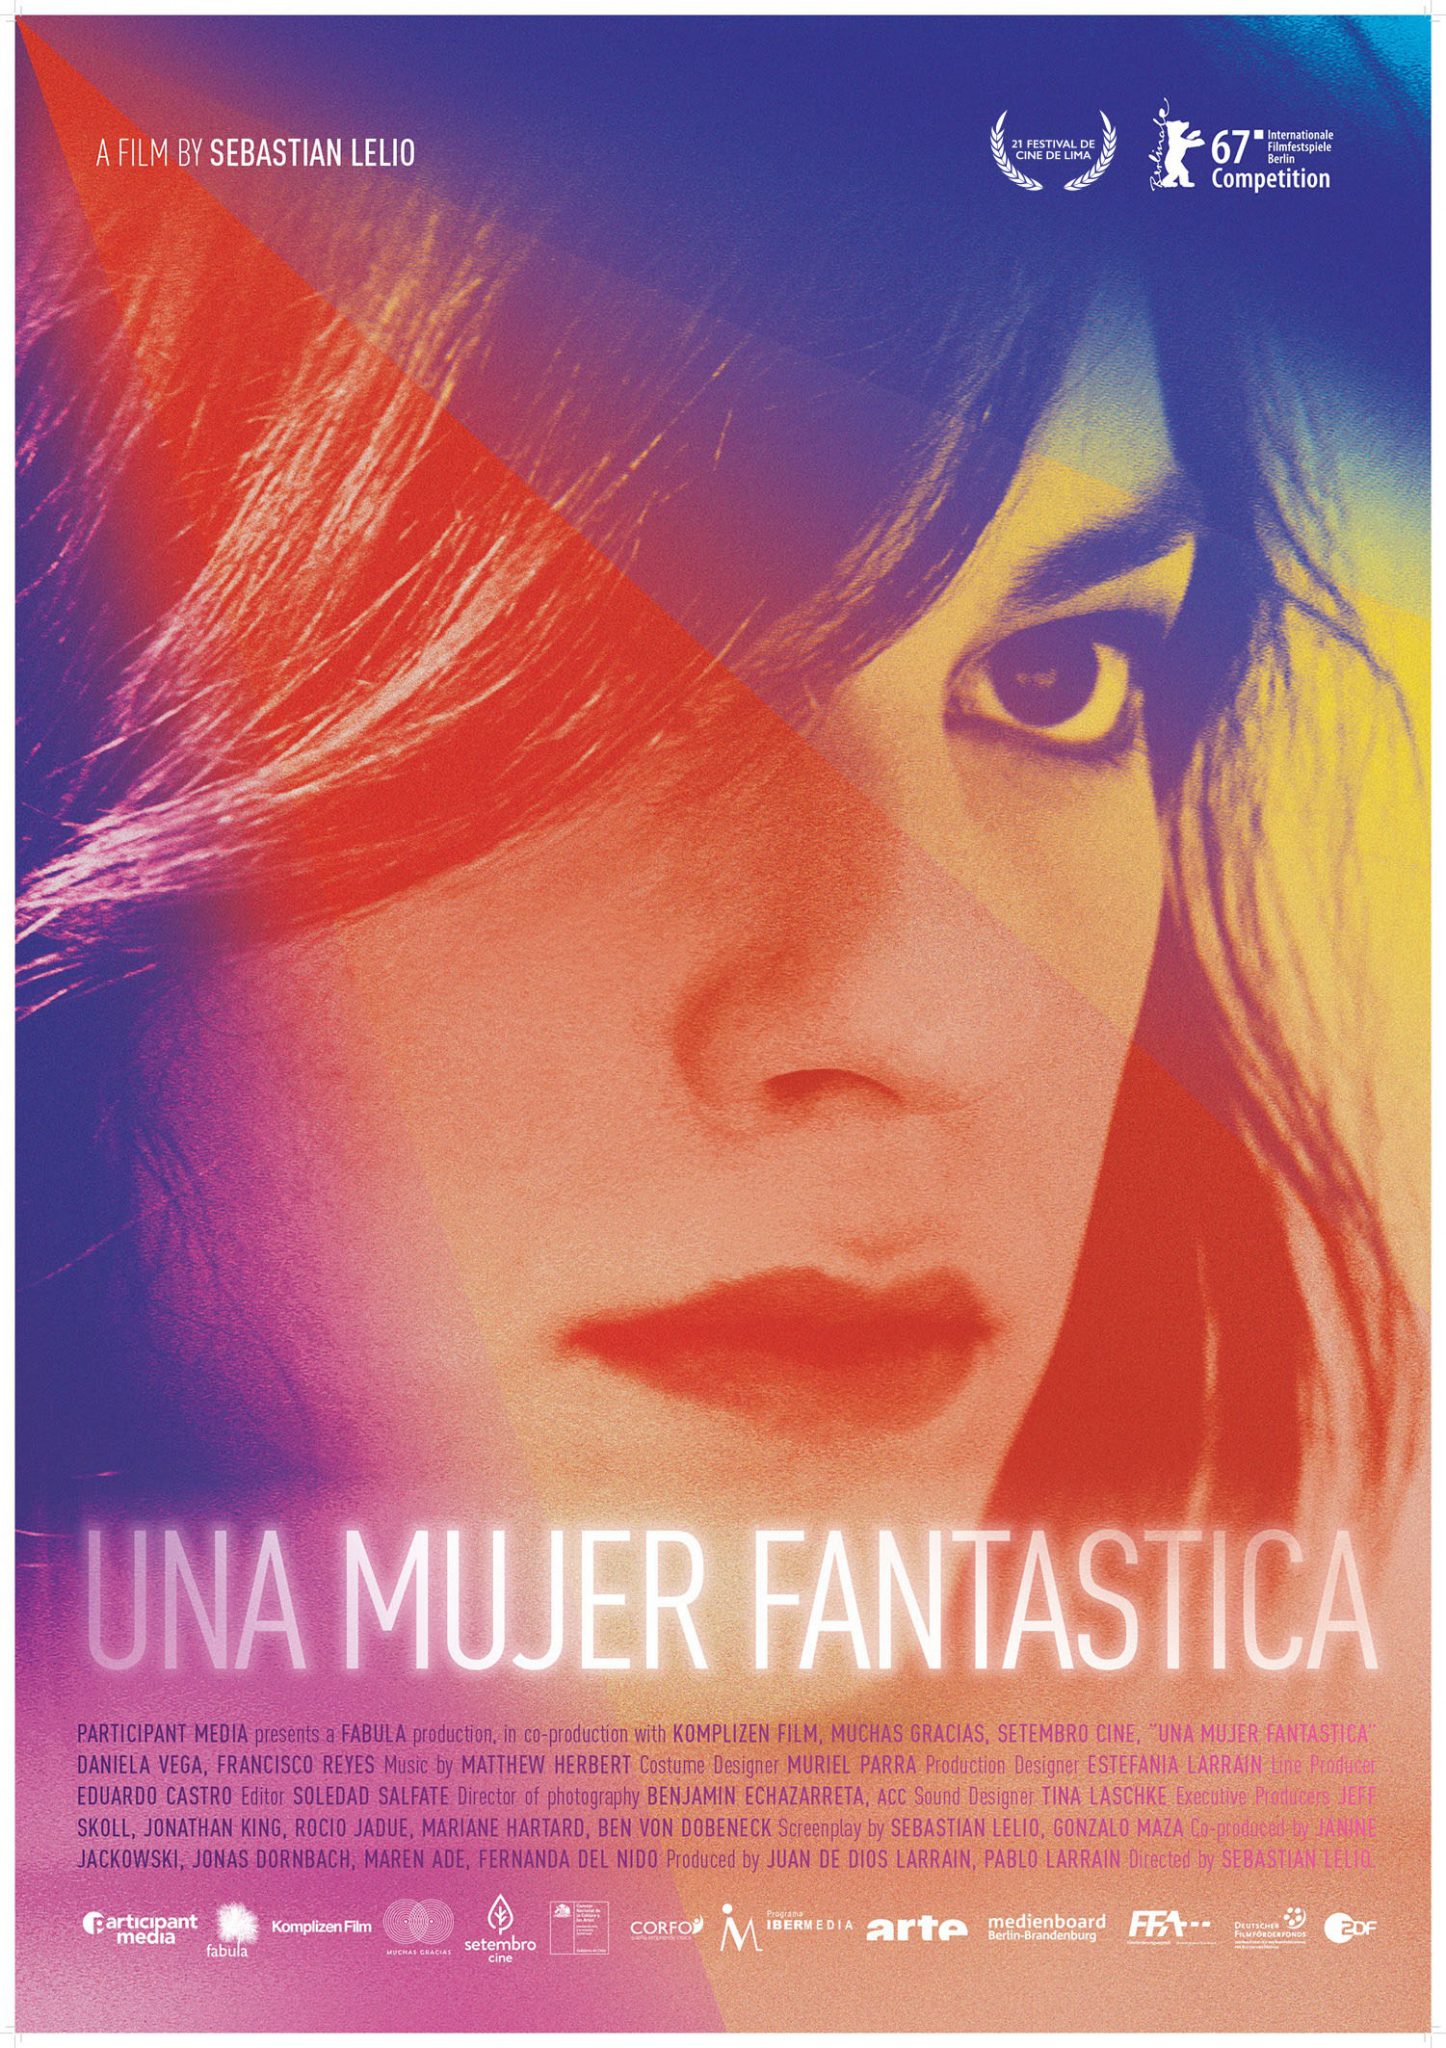 afiche publicitario de la película Una Mujer Fantástica, aparece en él la cara de Daniela Vega